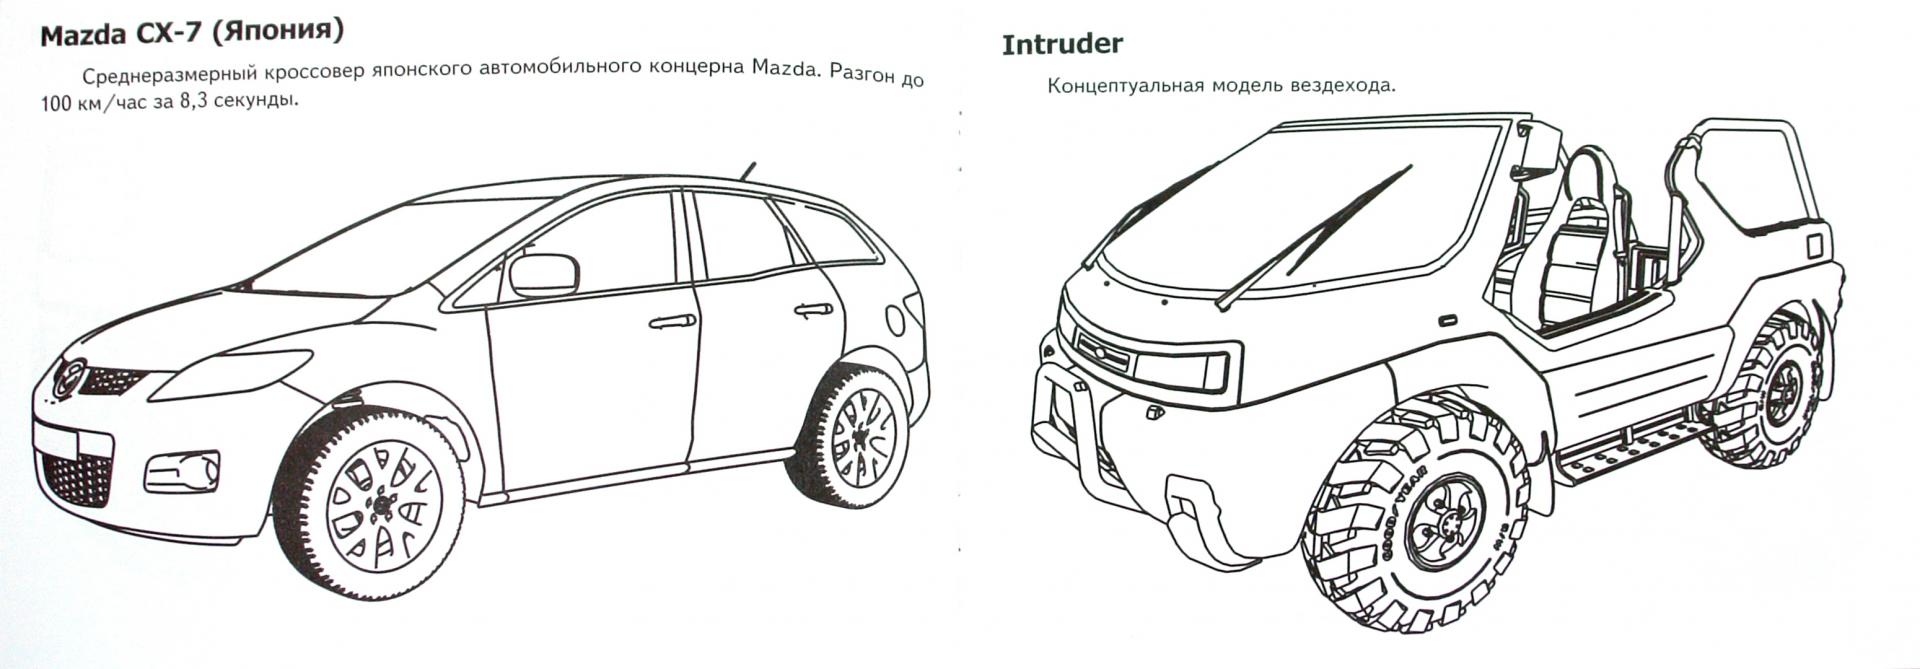 Иллюстрация 1 из 6 для Автомобили-модели мира. Внедорожники | Лабиринт - книги. Источник: Лабиринт